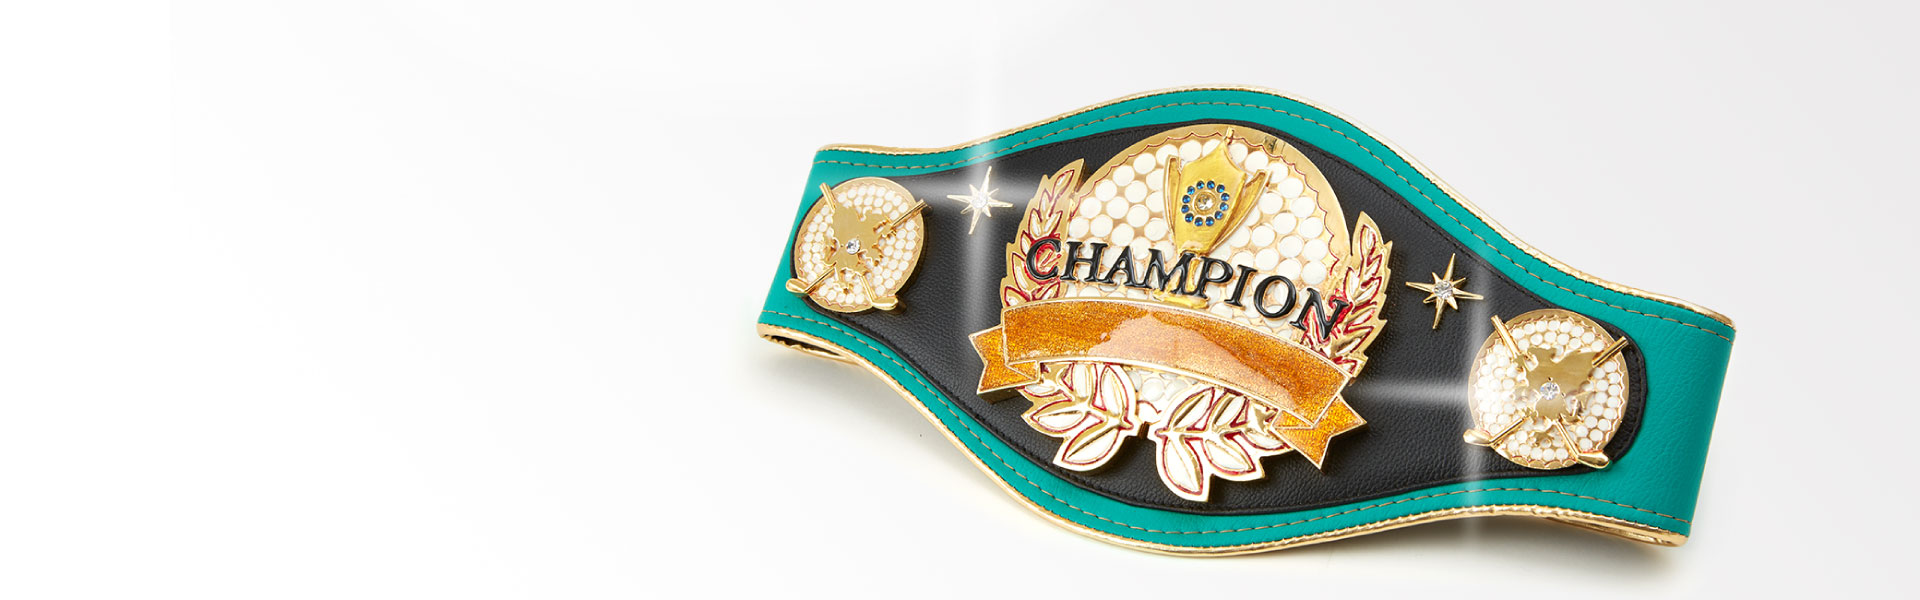 Champrex – チャンピオンベルトをオーダーメイドで制作。イベントや 